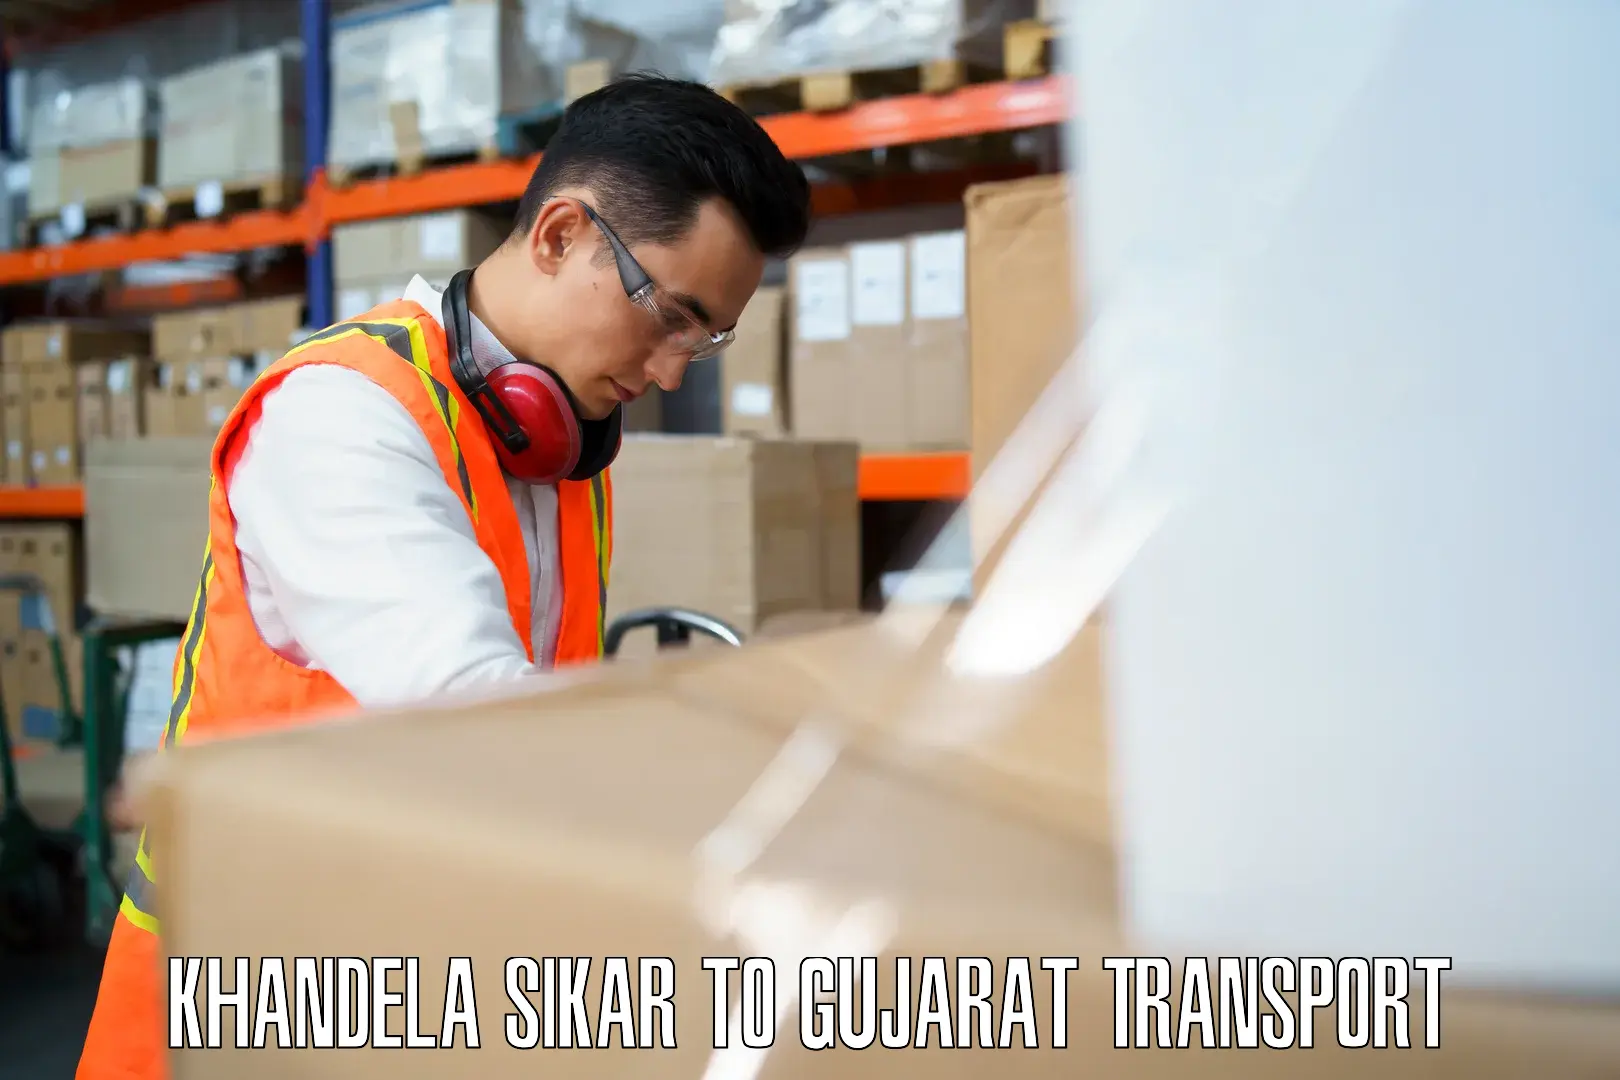 Goods transport services Khandela Sikar to Gujarat